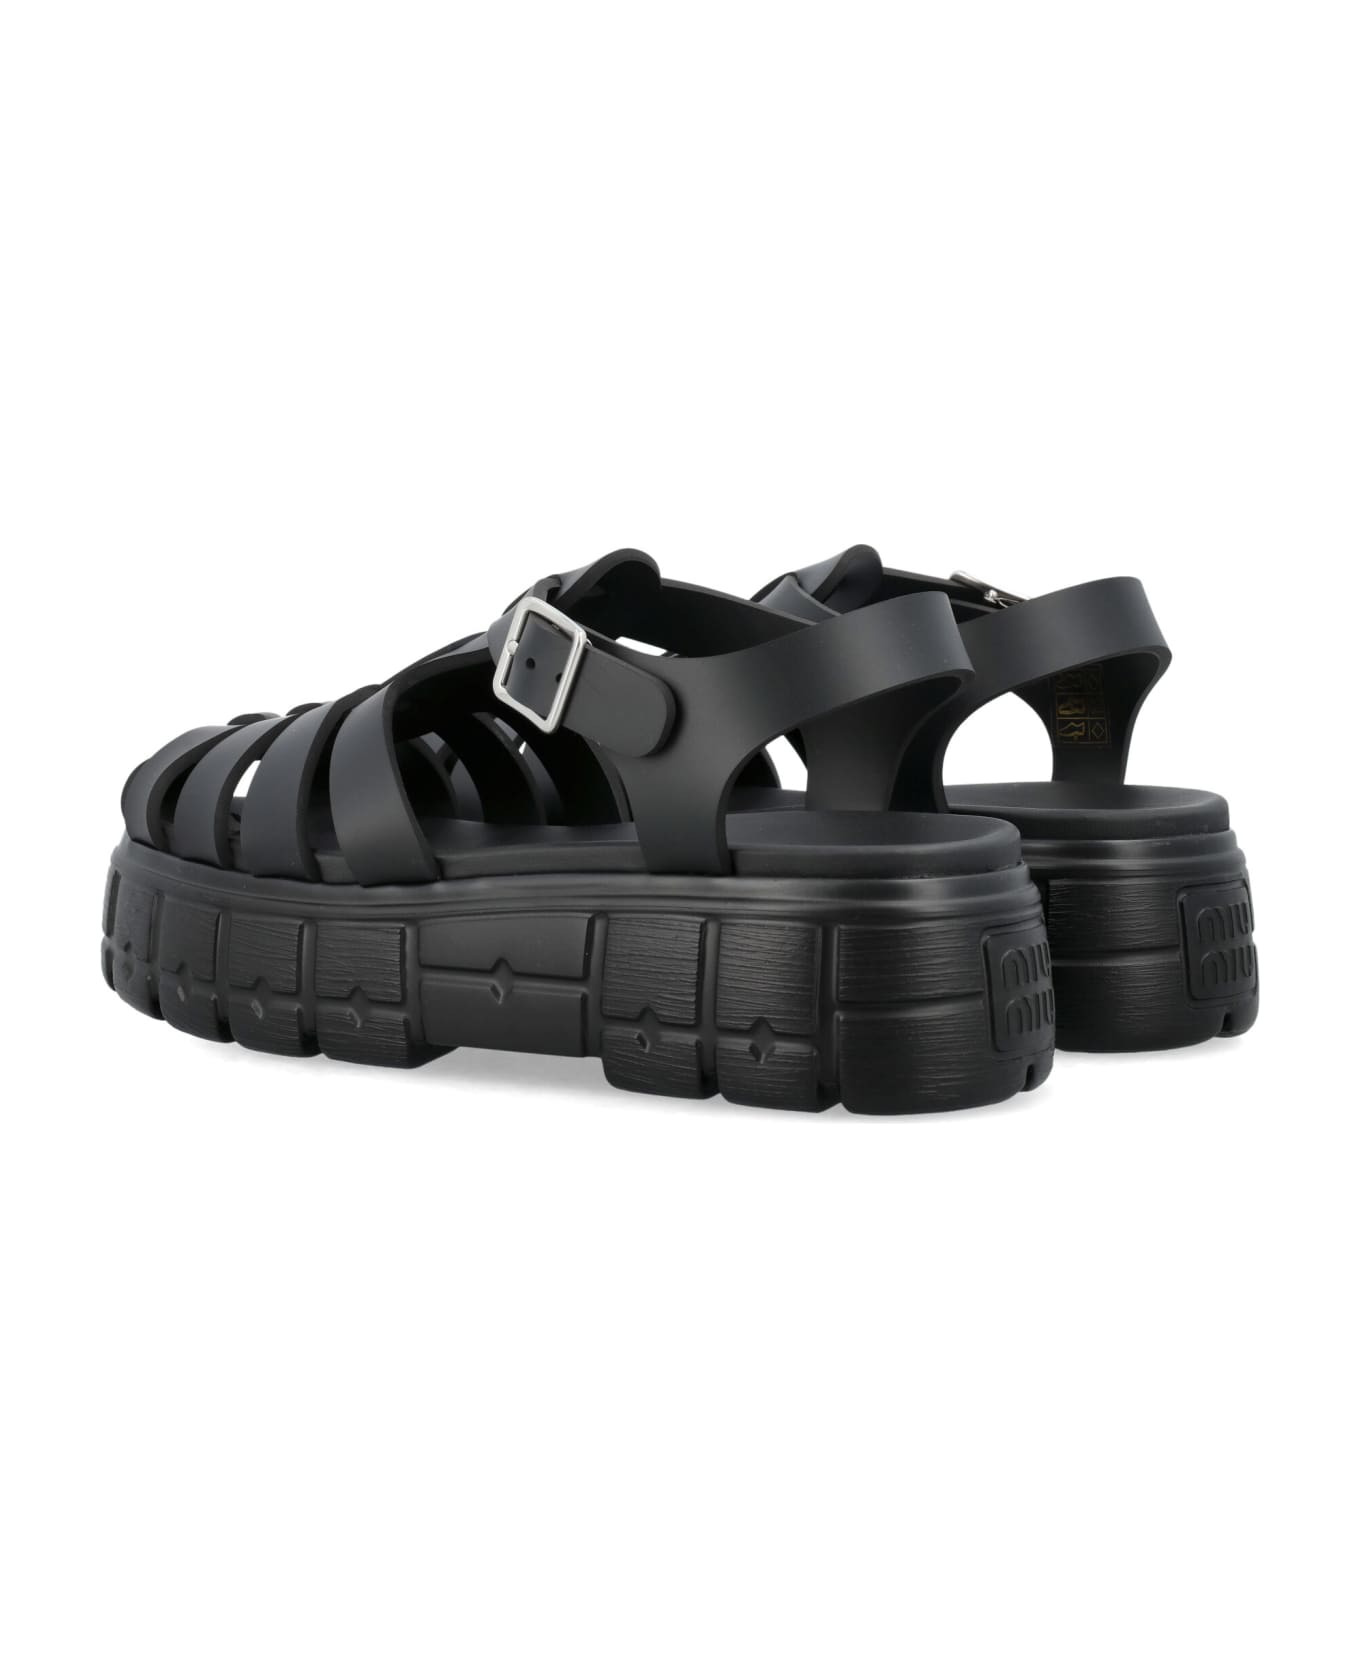 Miu Miu Leather Sandals - Nero